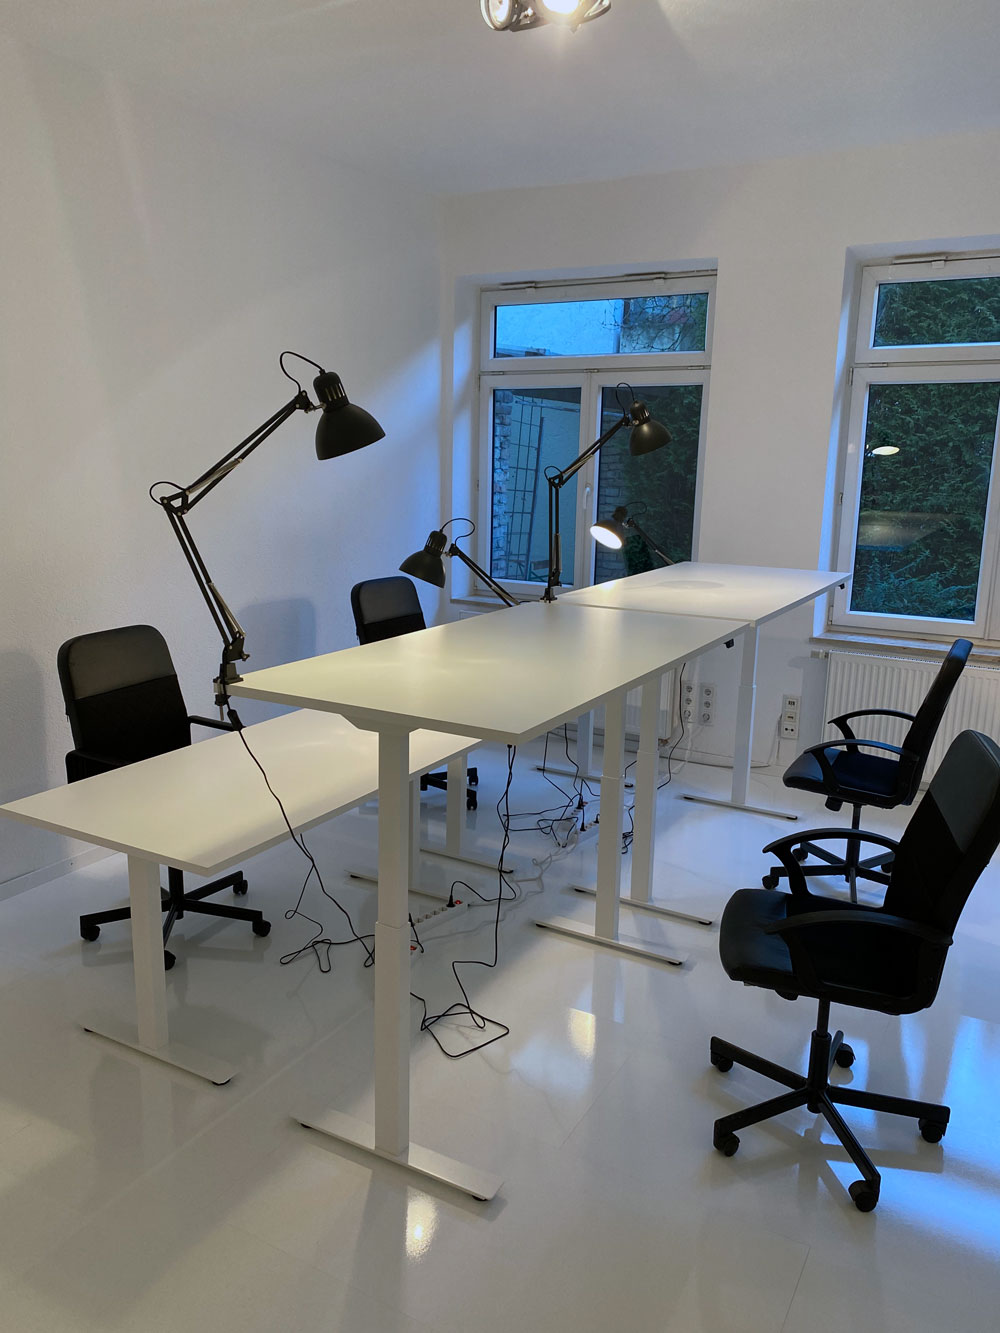 Elektrisch höhenverstellbare Fix Desk Premium Schreibtische bei uns im Coworking Space München